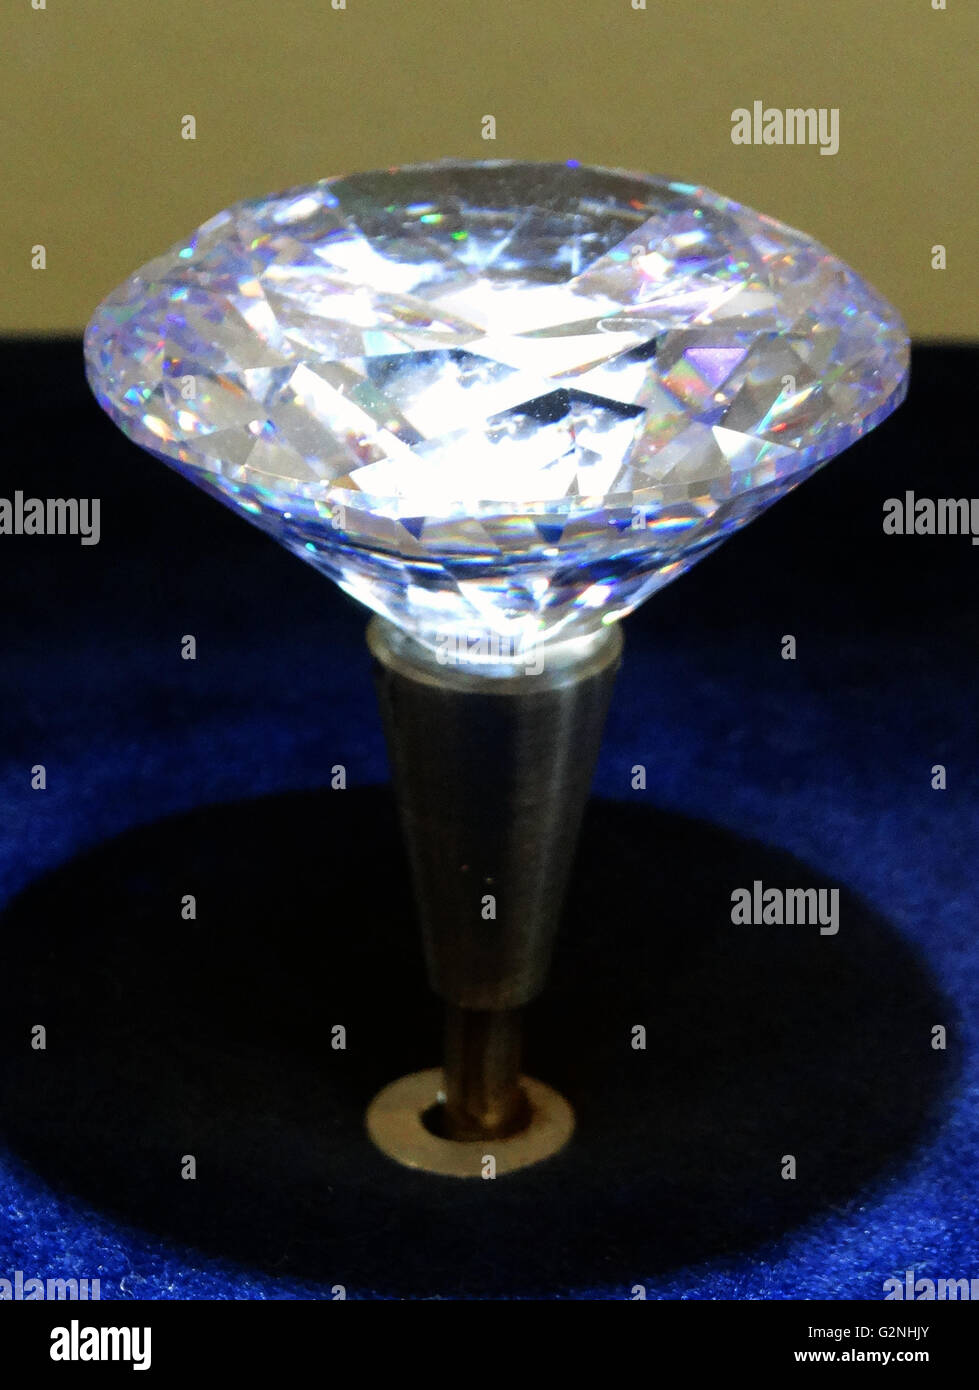 Coster Diamonds' der Royal 201' Diamanten mit 201 Facetten. Coster Diamonds ist eine der ältesten noch in Betrieb Diamantpolieren Fabriken in Amsterdam. Vom 2014 Stockfoto